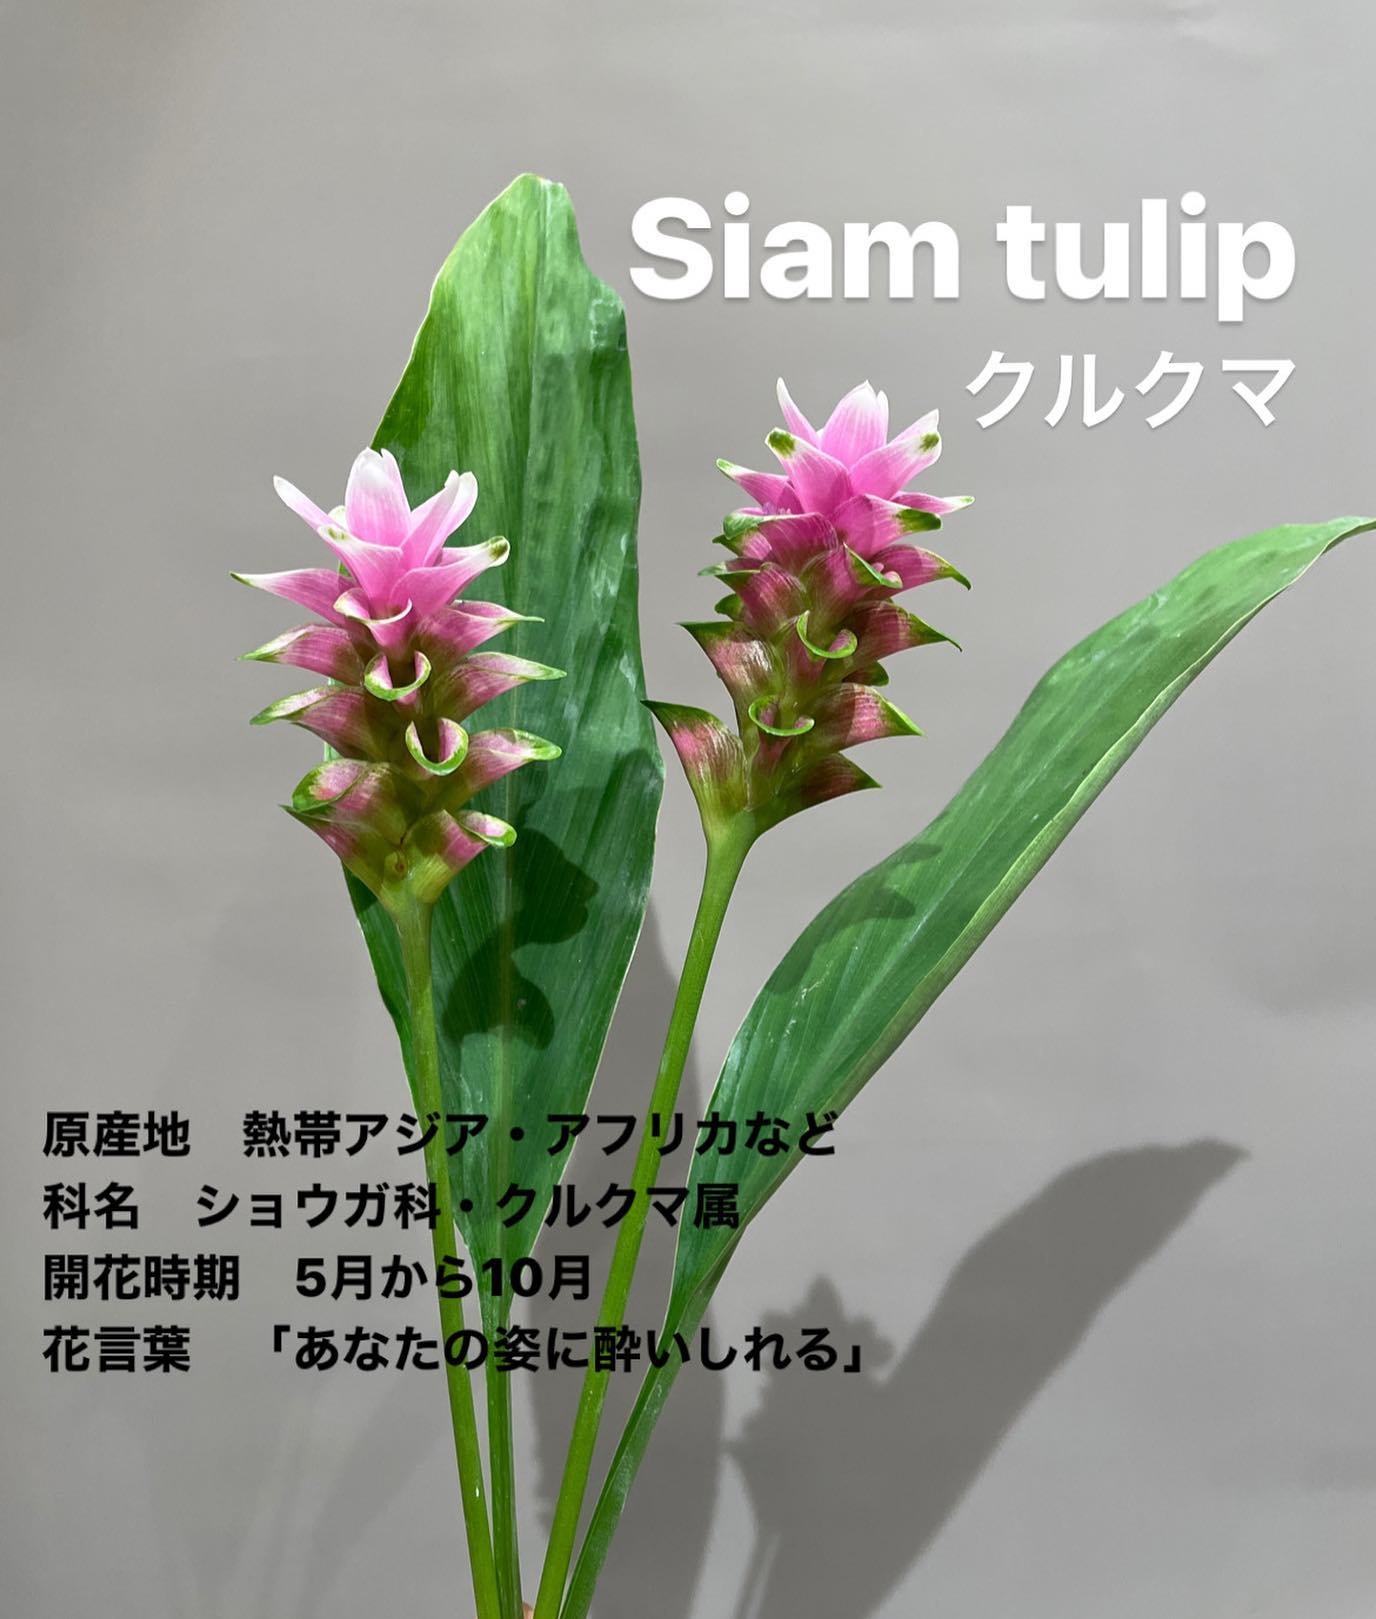 モンソーフルール新宿アルタ店です
.

 Siam tulip
クルクマ

原産地　熱帯アジア・アフリカなど
科名　ショウガ科・クルクマ属
開花時期　5月から10月
花言葉　「あなたの姿に酔いしれる」